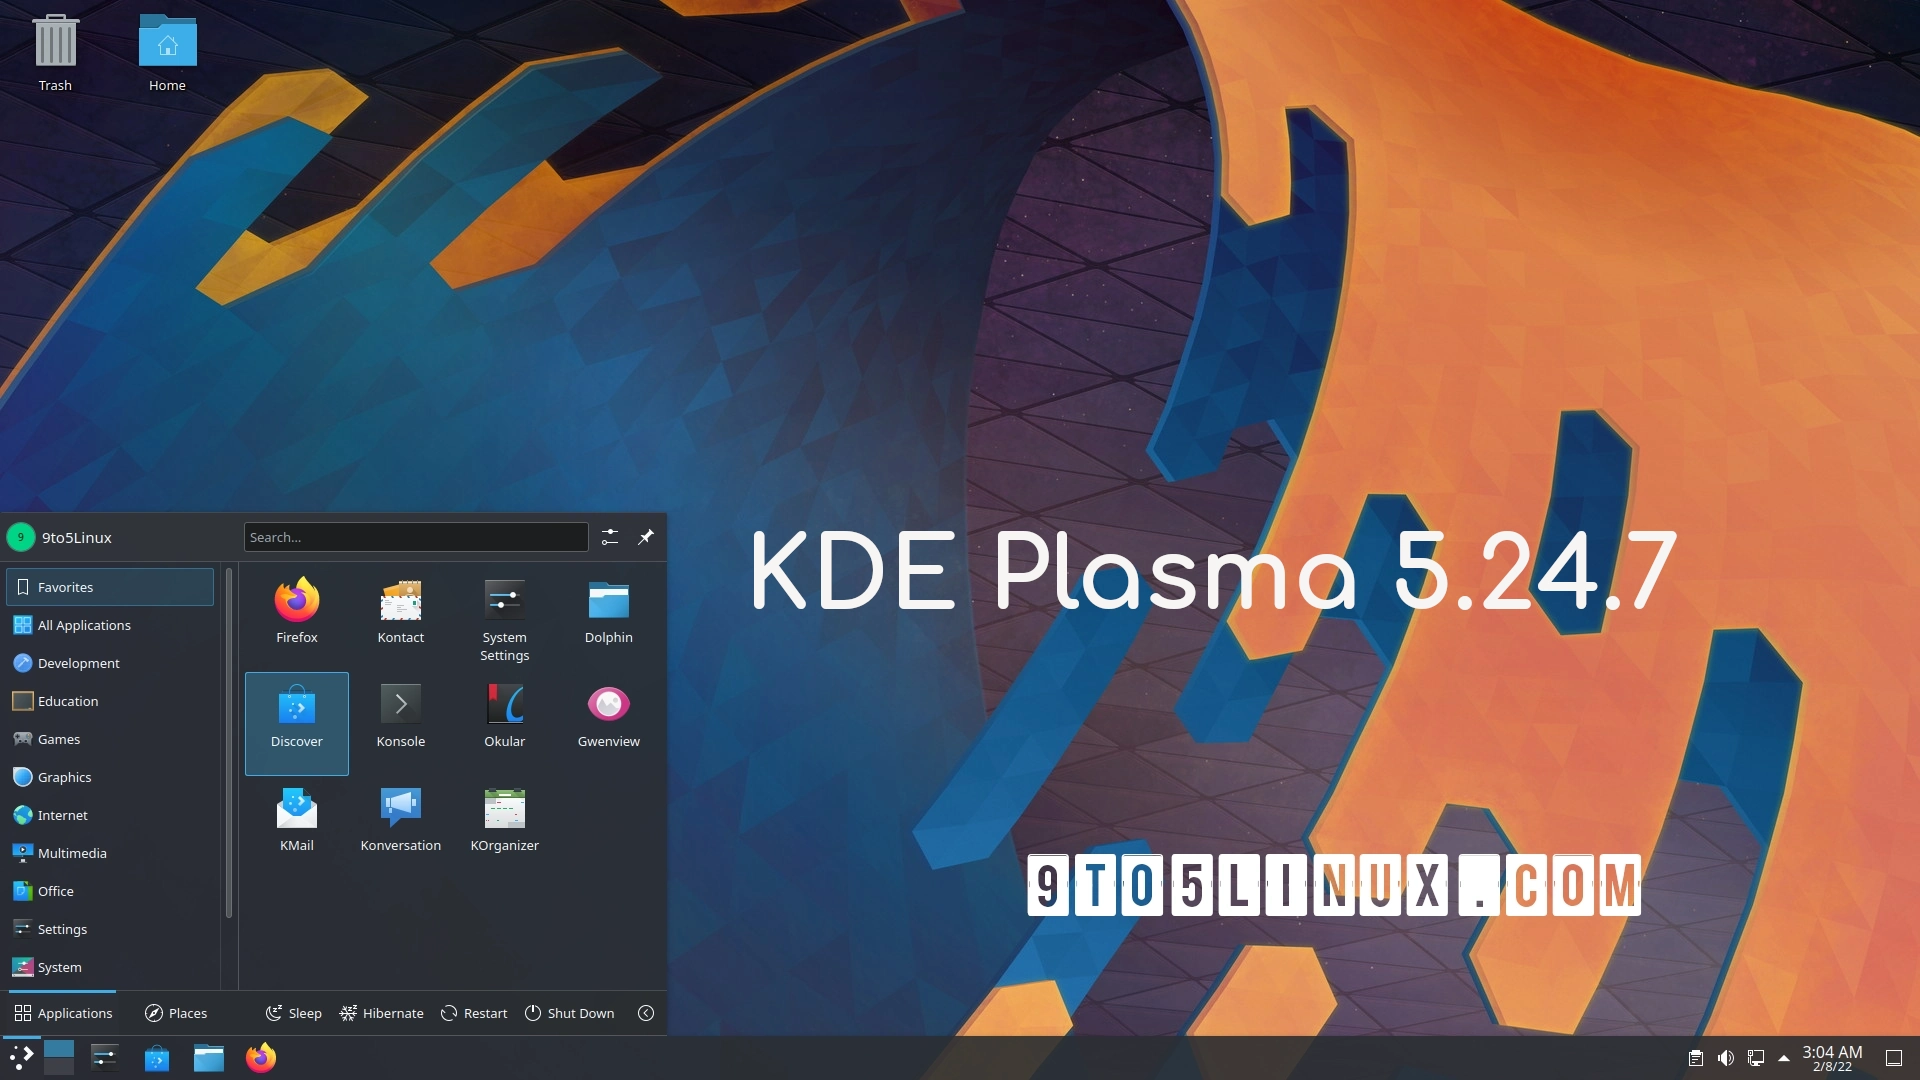 KDE Plasma 5.24.7 LTS Improves Support for Flatpak Apps, Plasma Wayland, and More